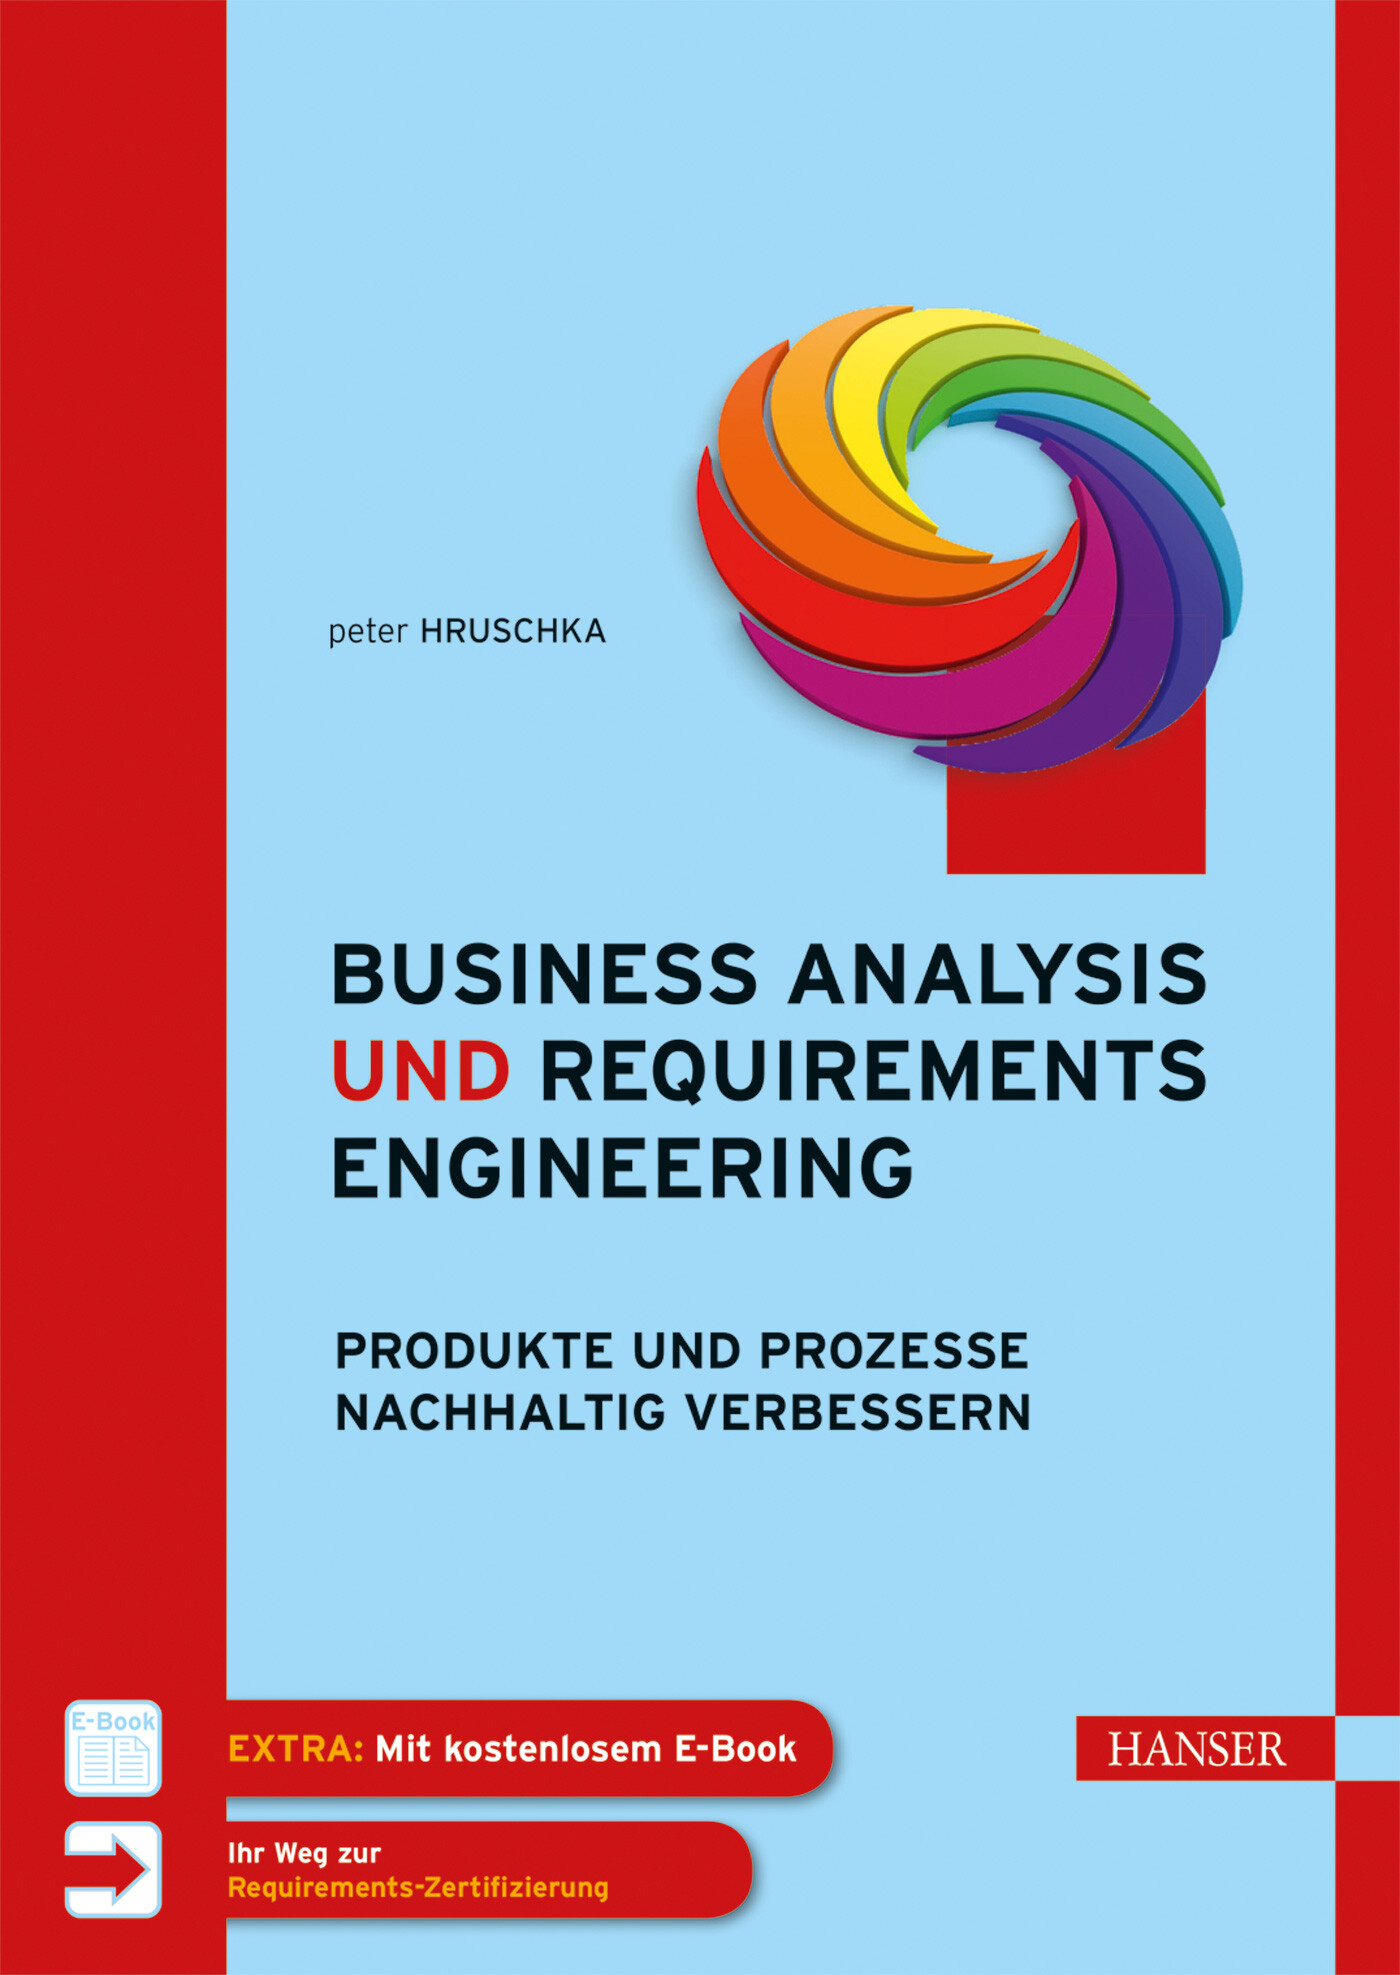 Business Analysis und Requirements Engineering mit E-Book